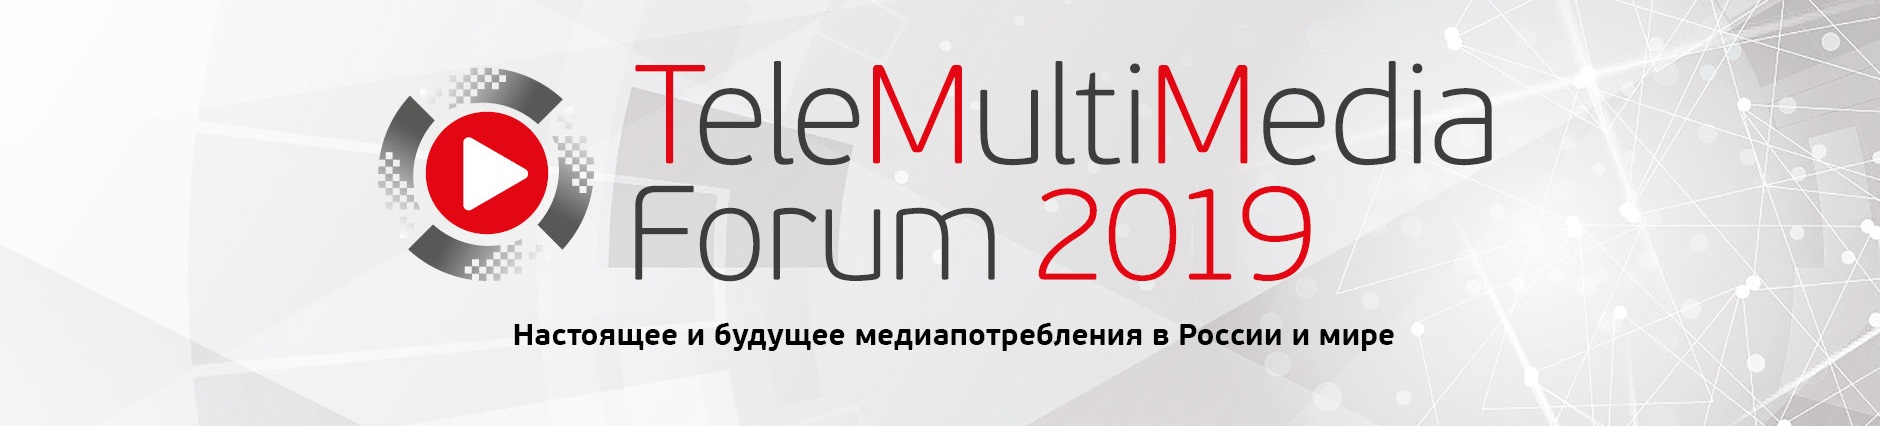 TeleMultiMedia Forum 2019 в Москве 11.04.2019